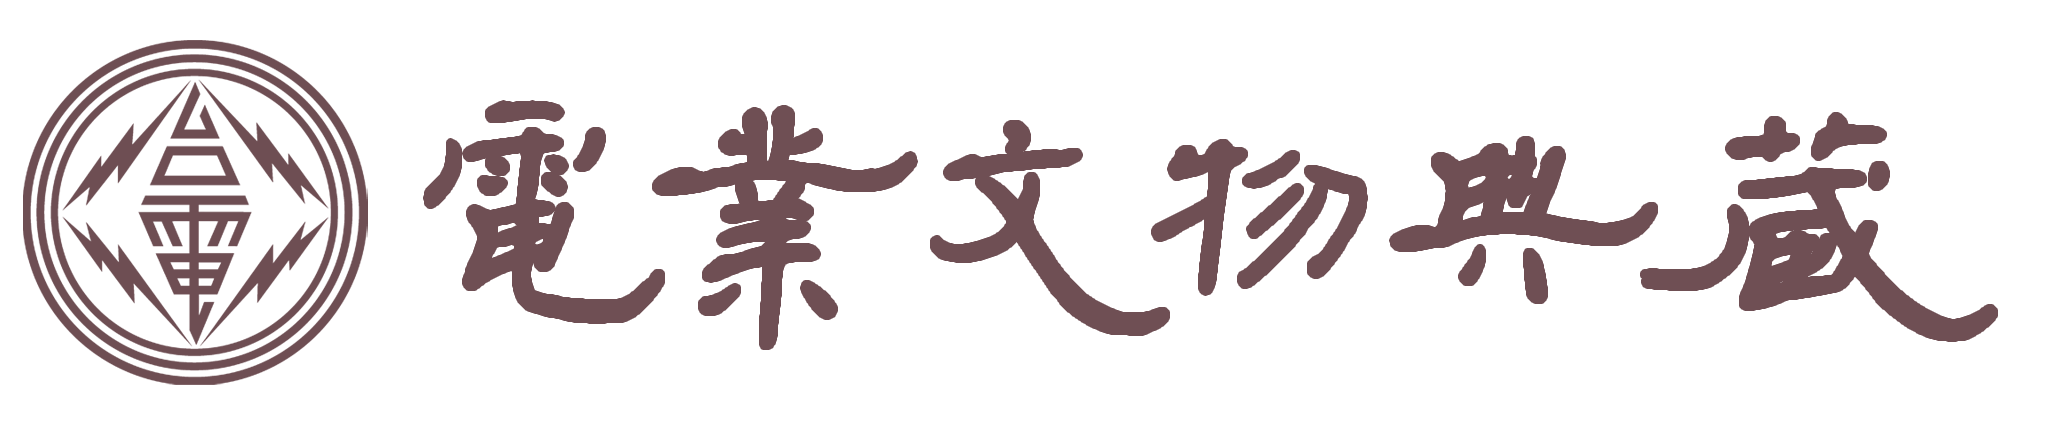 電業文物典藏 Logo